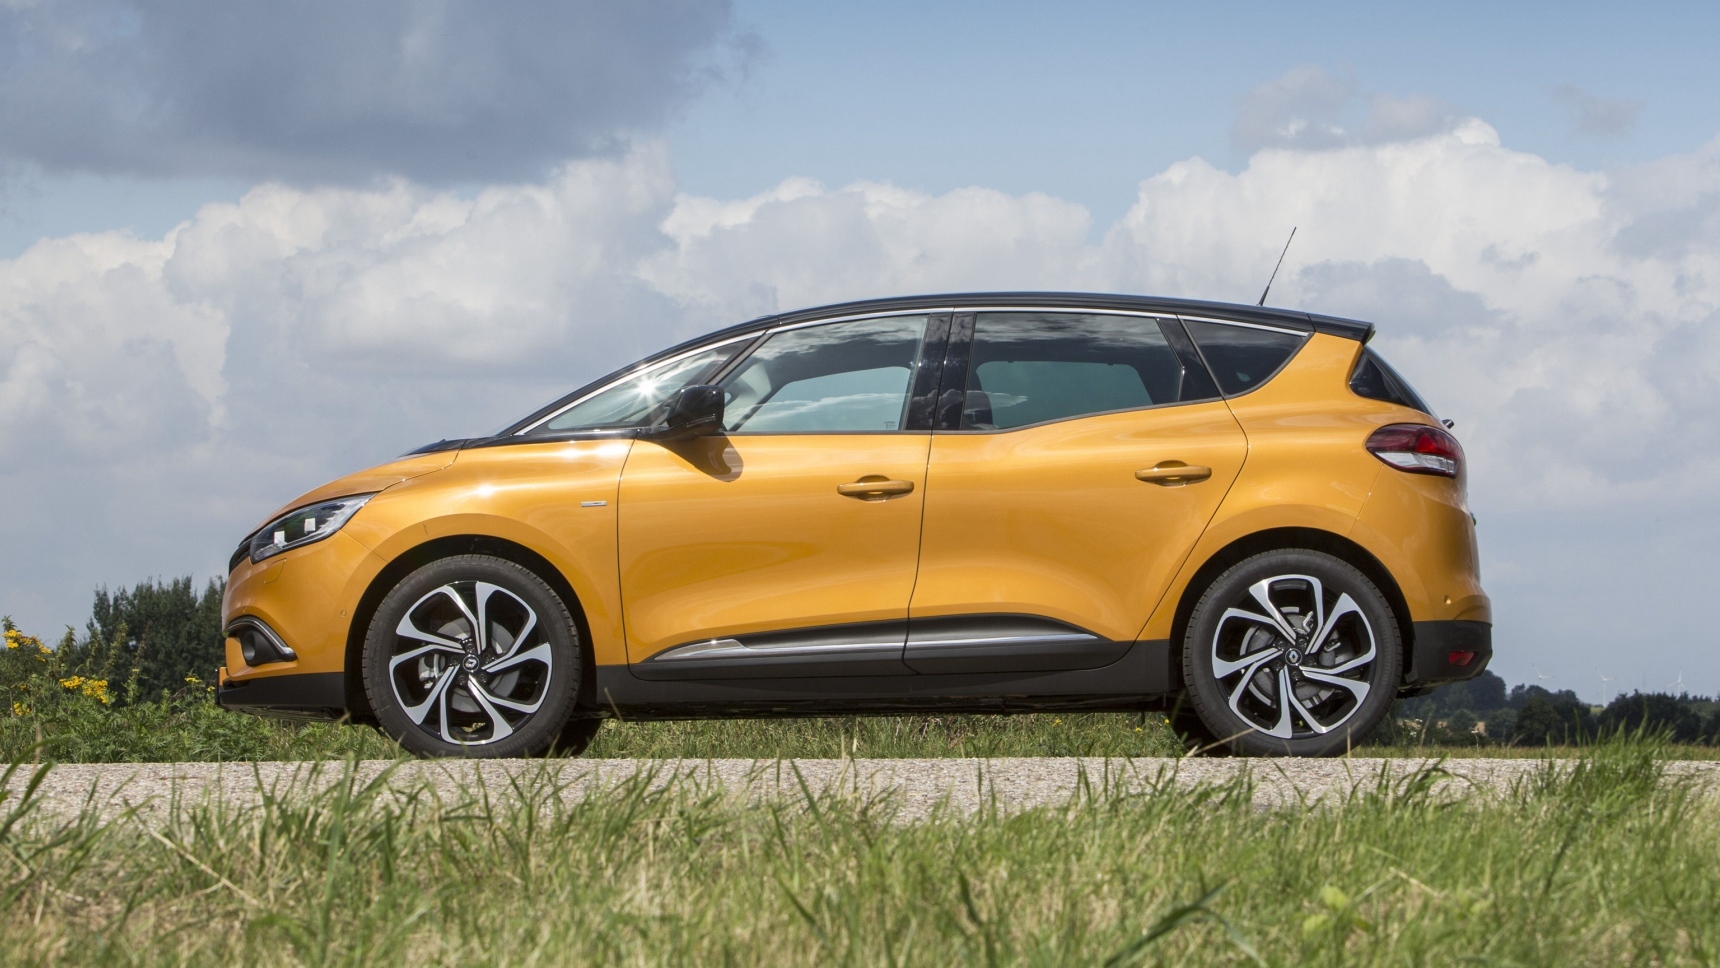 Renault Scenic снимают с производства